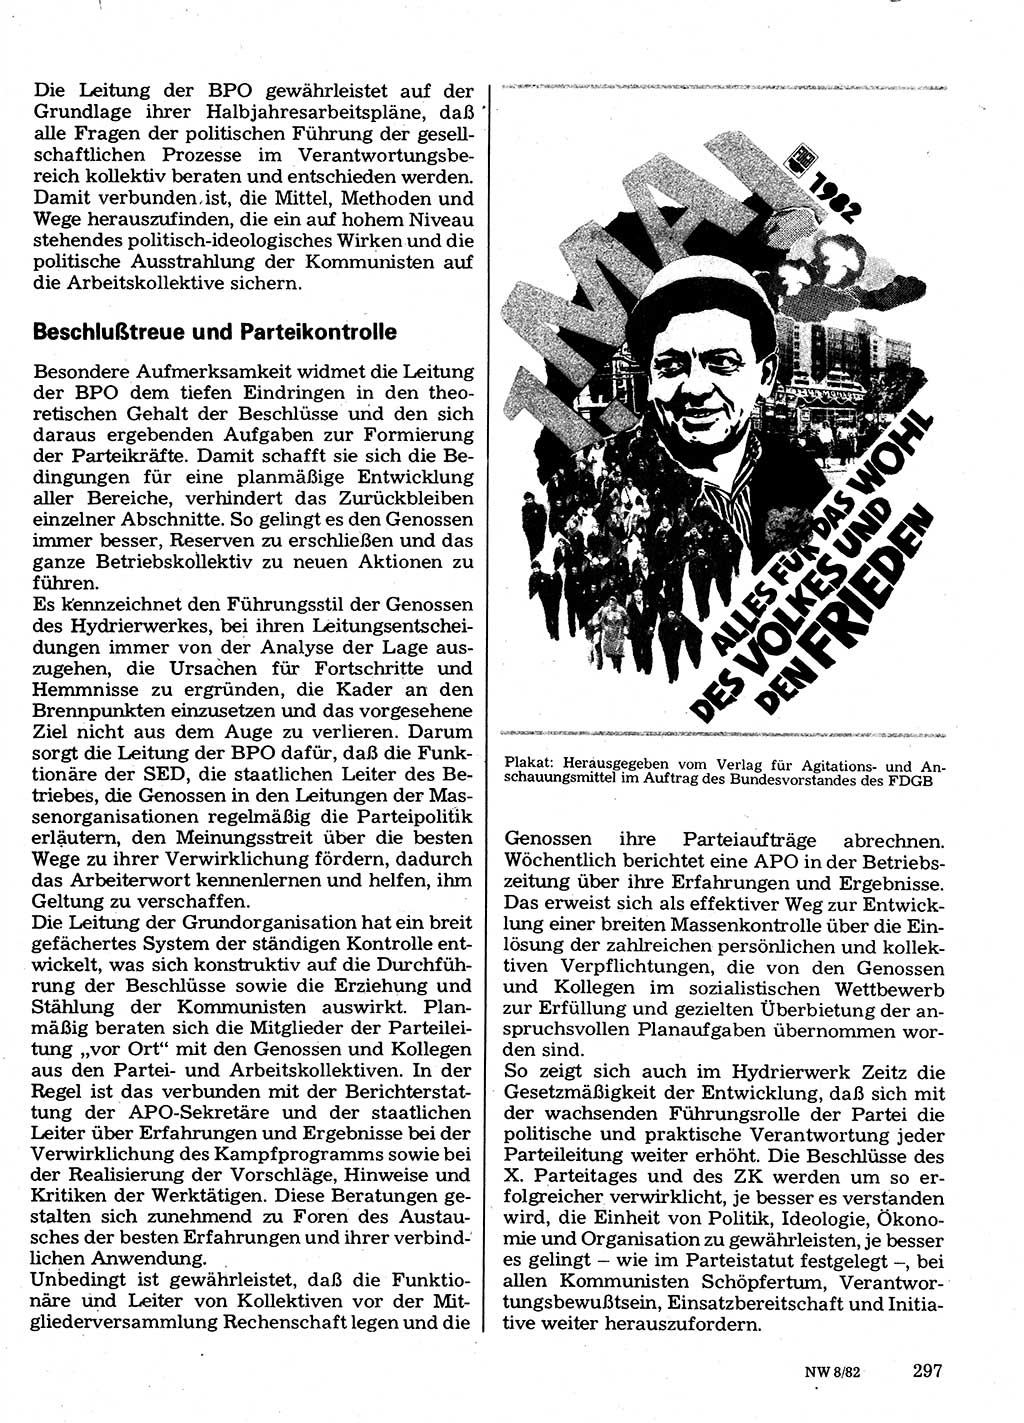 Neuer Weg (NW), Organ des Zentralkomitees (ZK) der SED (Sozialistische Einheitspartei Deutschlands) für Fragen des Parteilebens, 37. Jahrgang [Deutsche Demokratische Republik (DDR)] 1982, Seite 297 (NW ZK SED DDR 1982, S. 297)